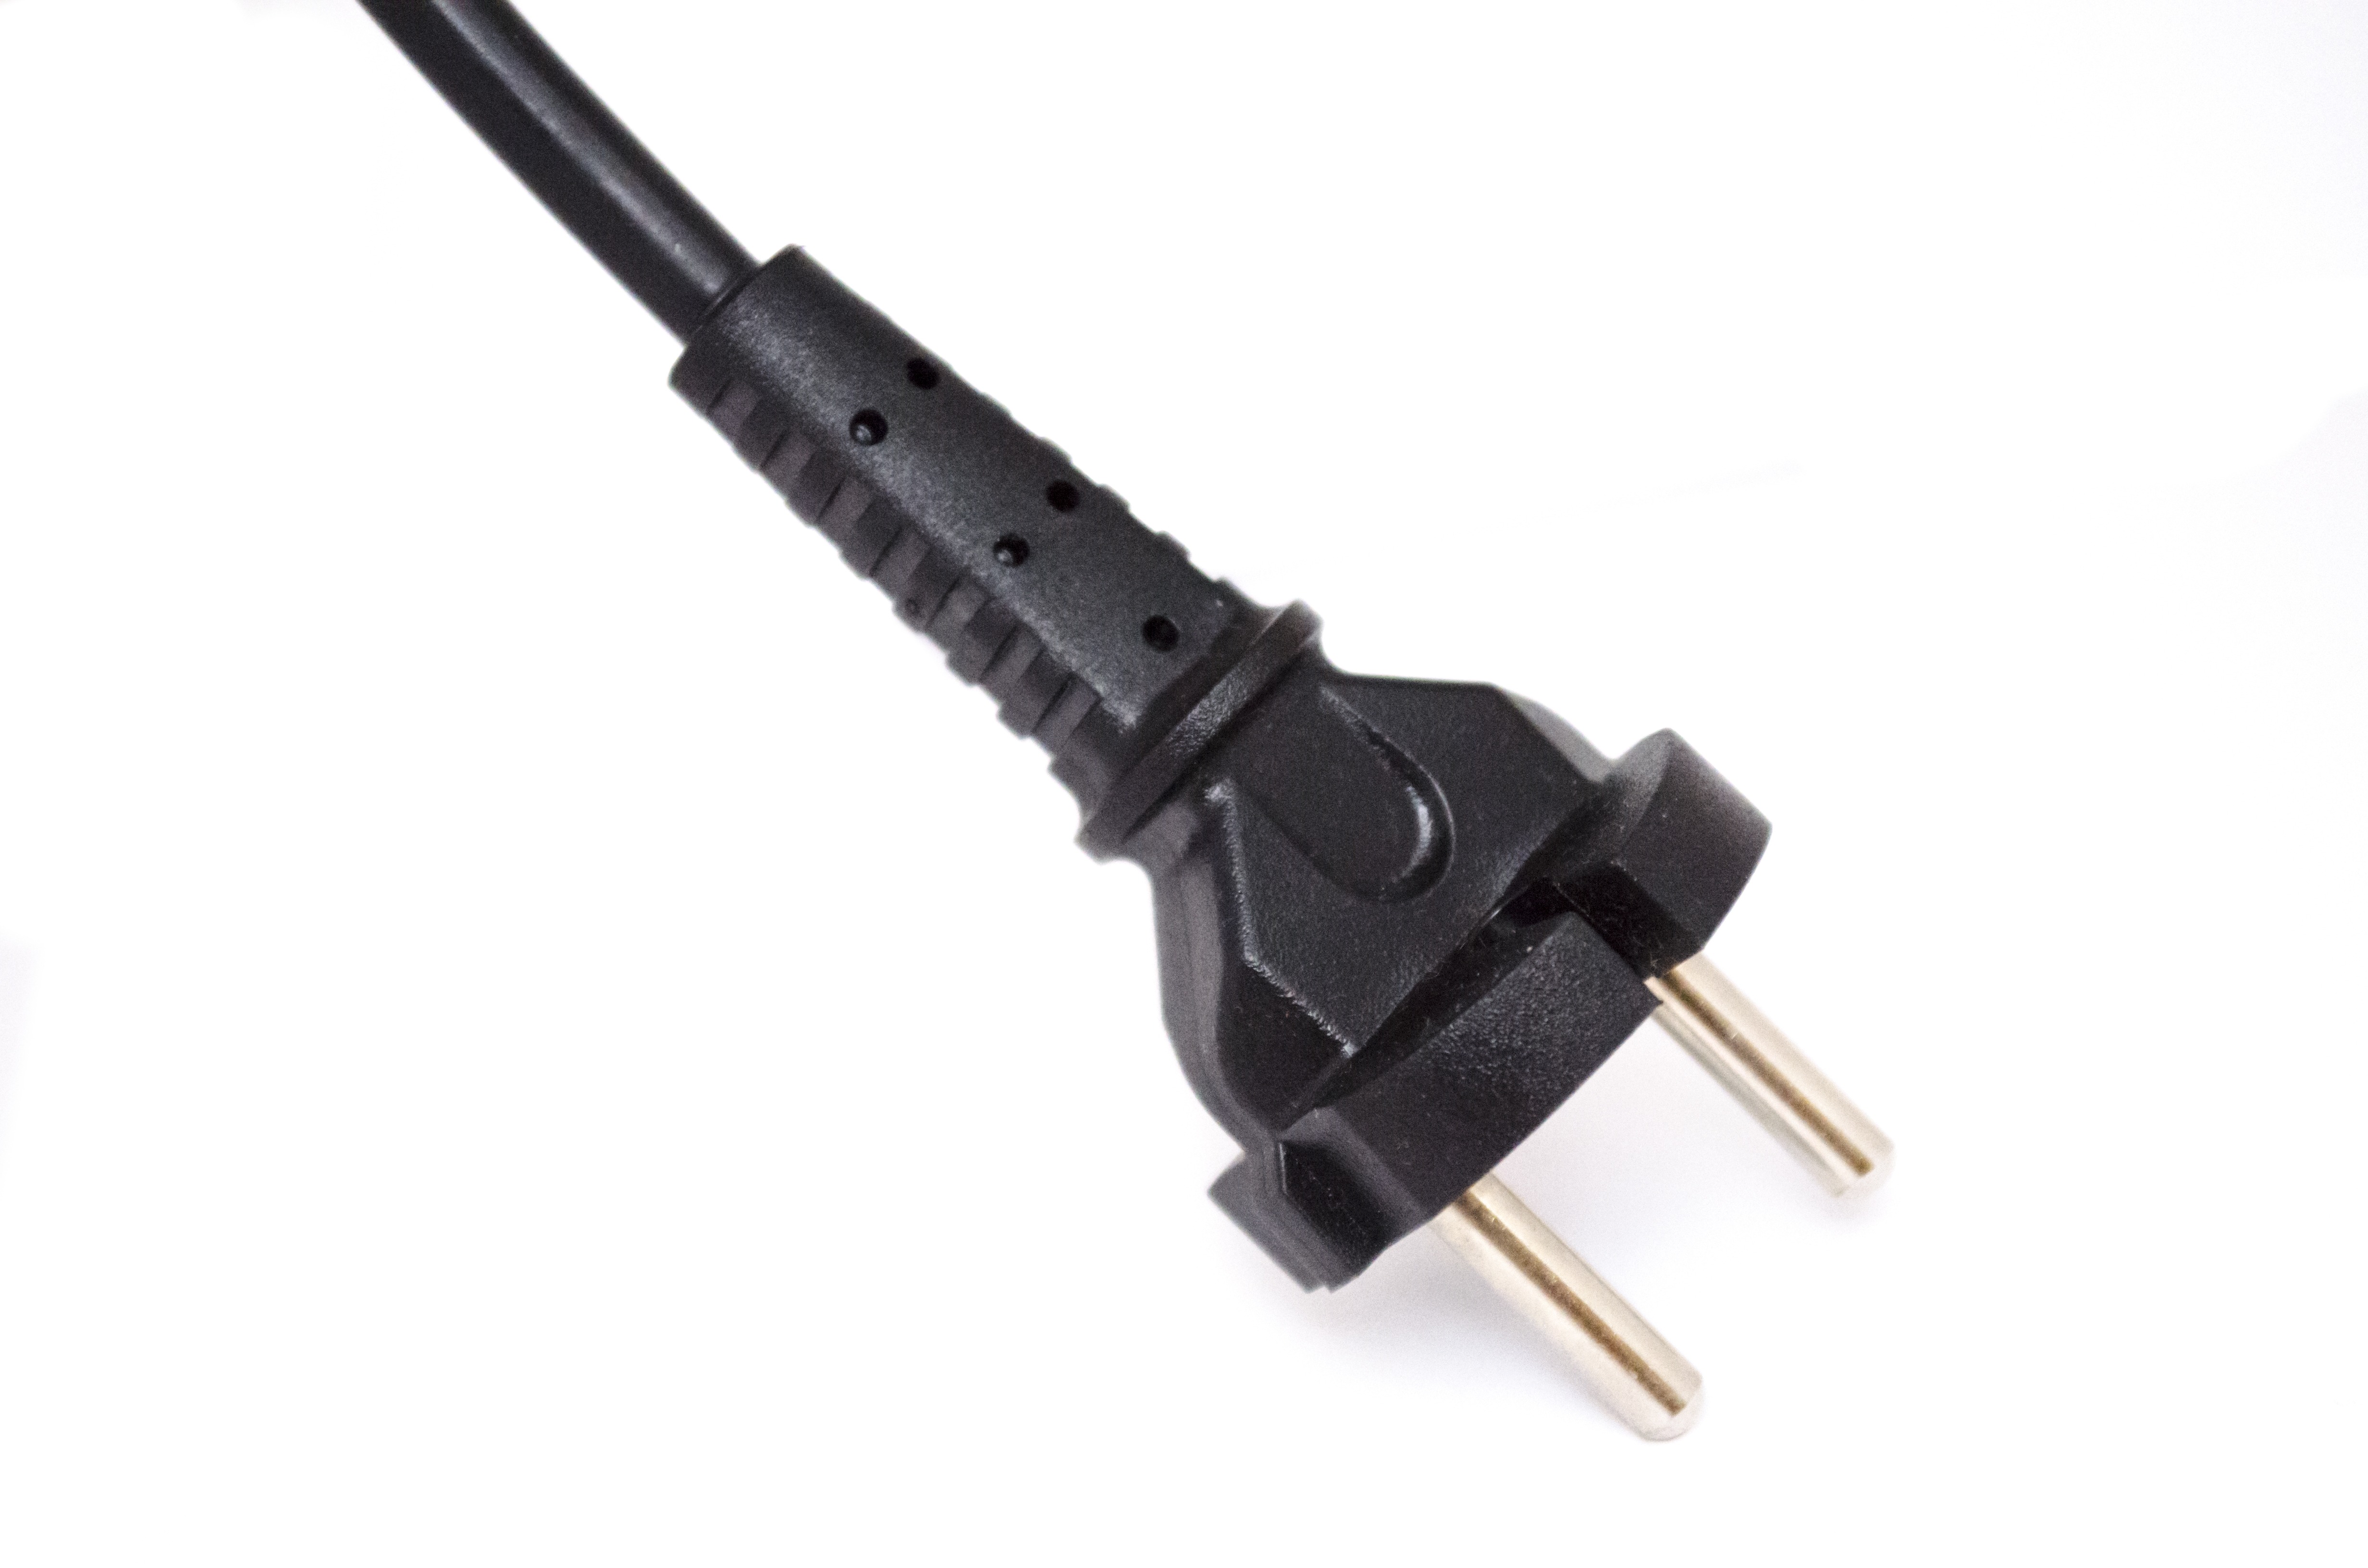 Шнур без вилки. Вилка типа "Sсhuko 16а-3pin" кабельная. Тип вилки au Plug. Вилка кабеля для зарядки (32651-892-003). Тип вилки us Plug.